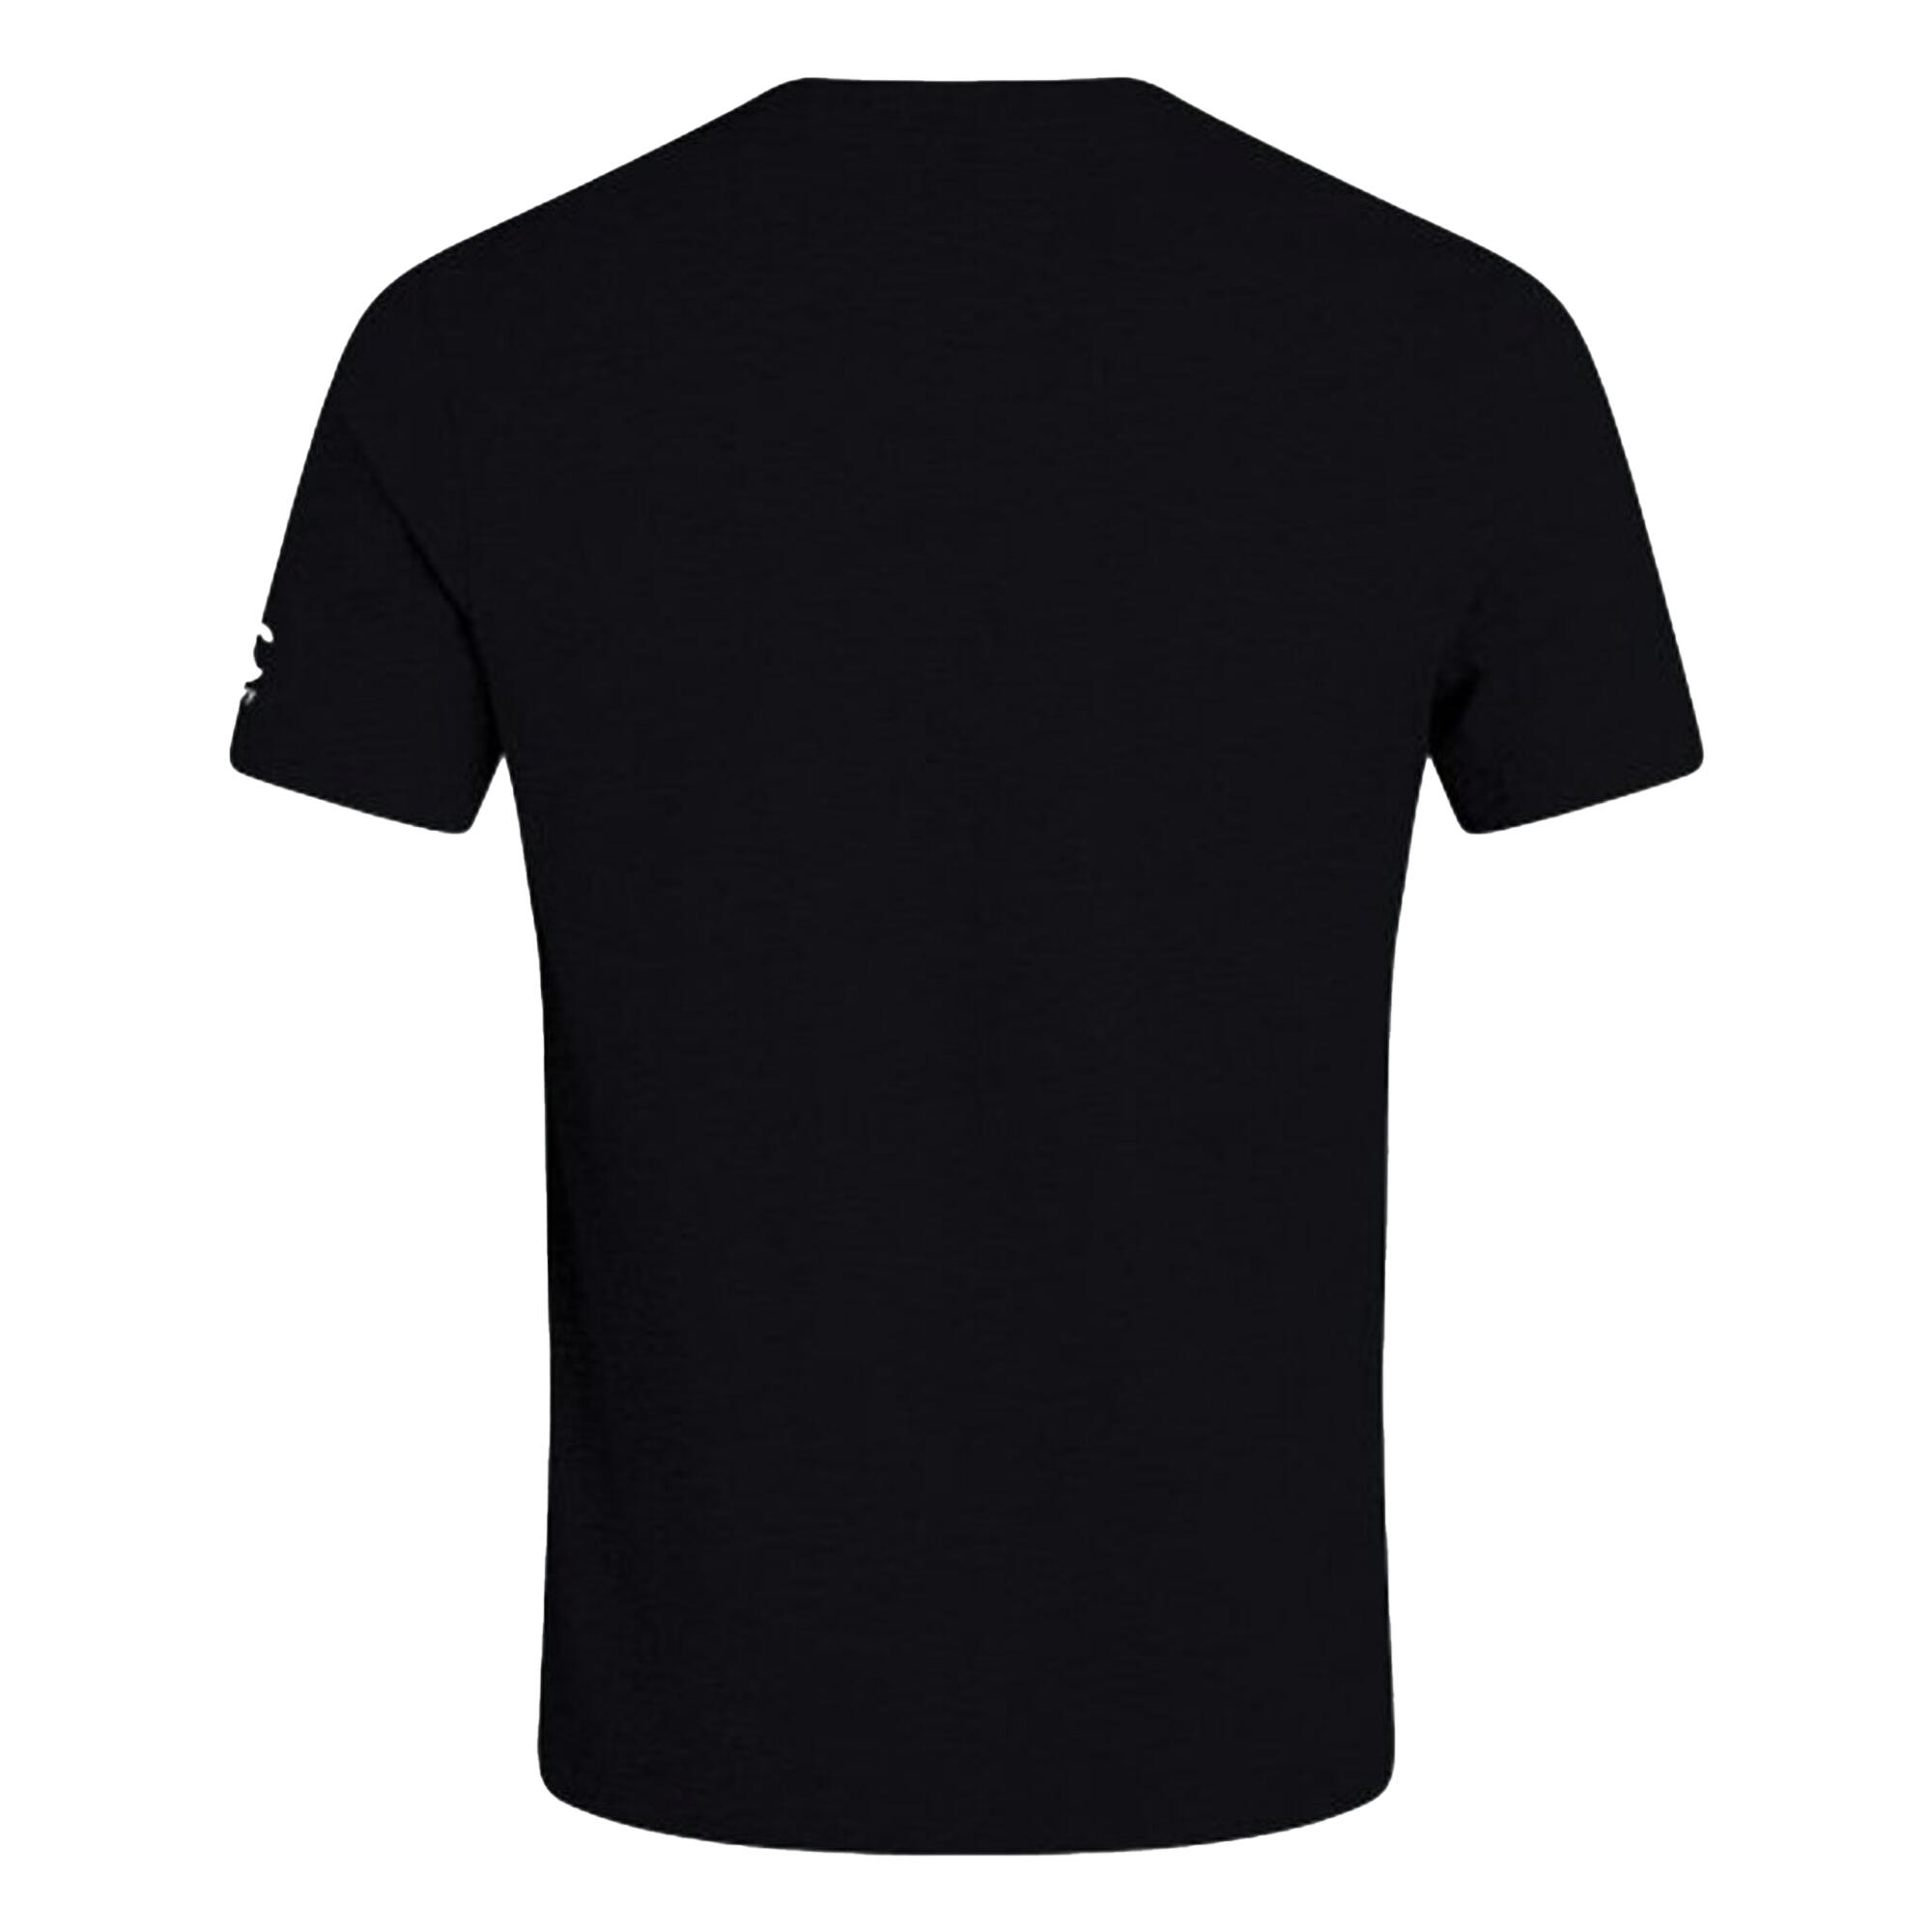 Unisex Adult Club Plain TShirt (Black) 2/3